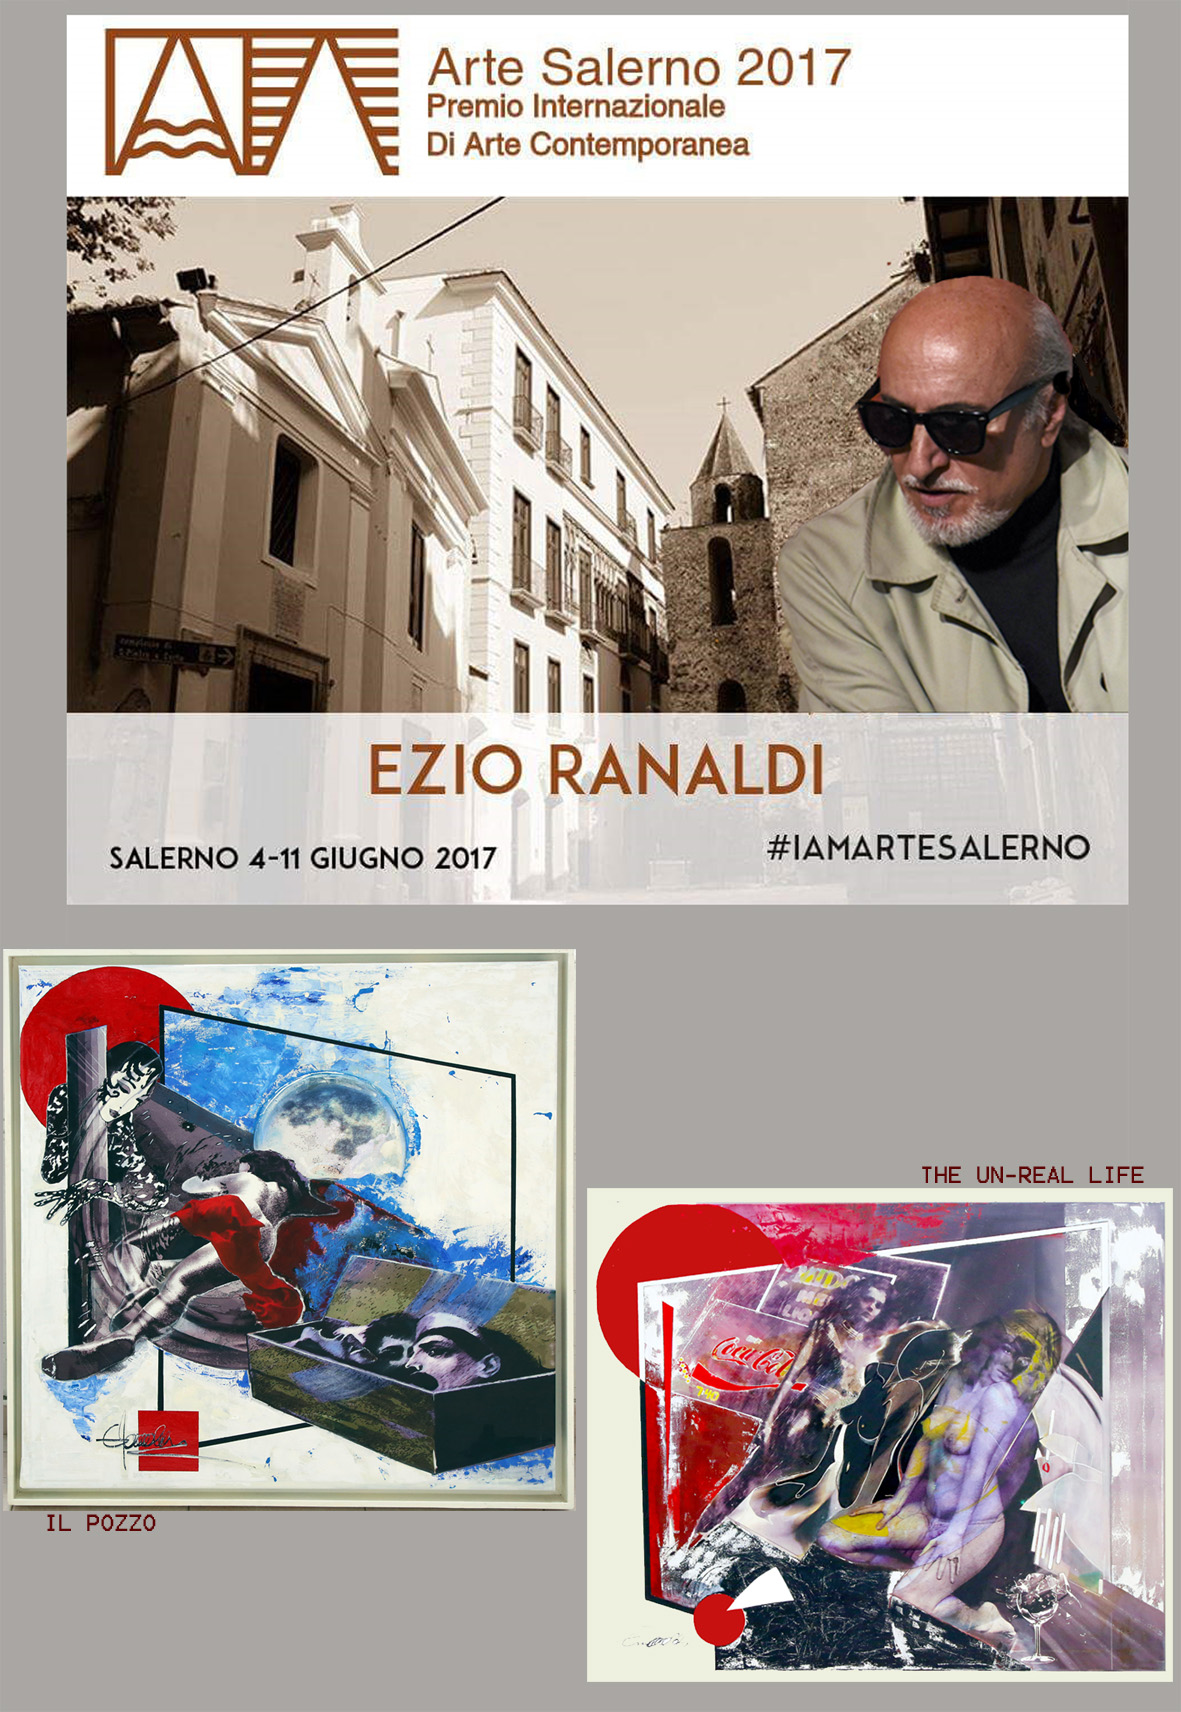 Ezio Ranaldi – arte salerno 2017 3 copia